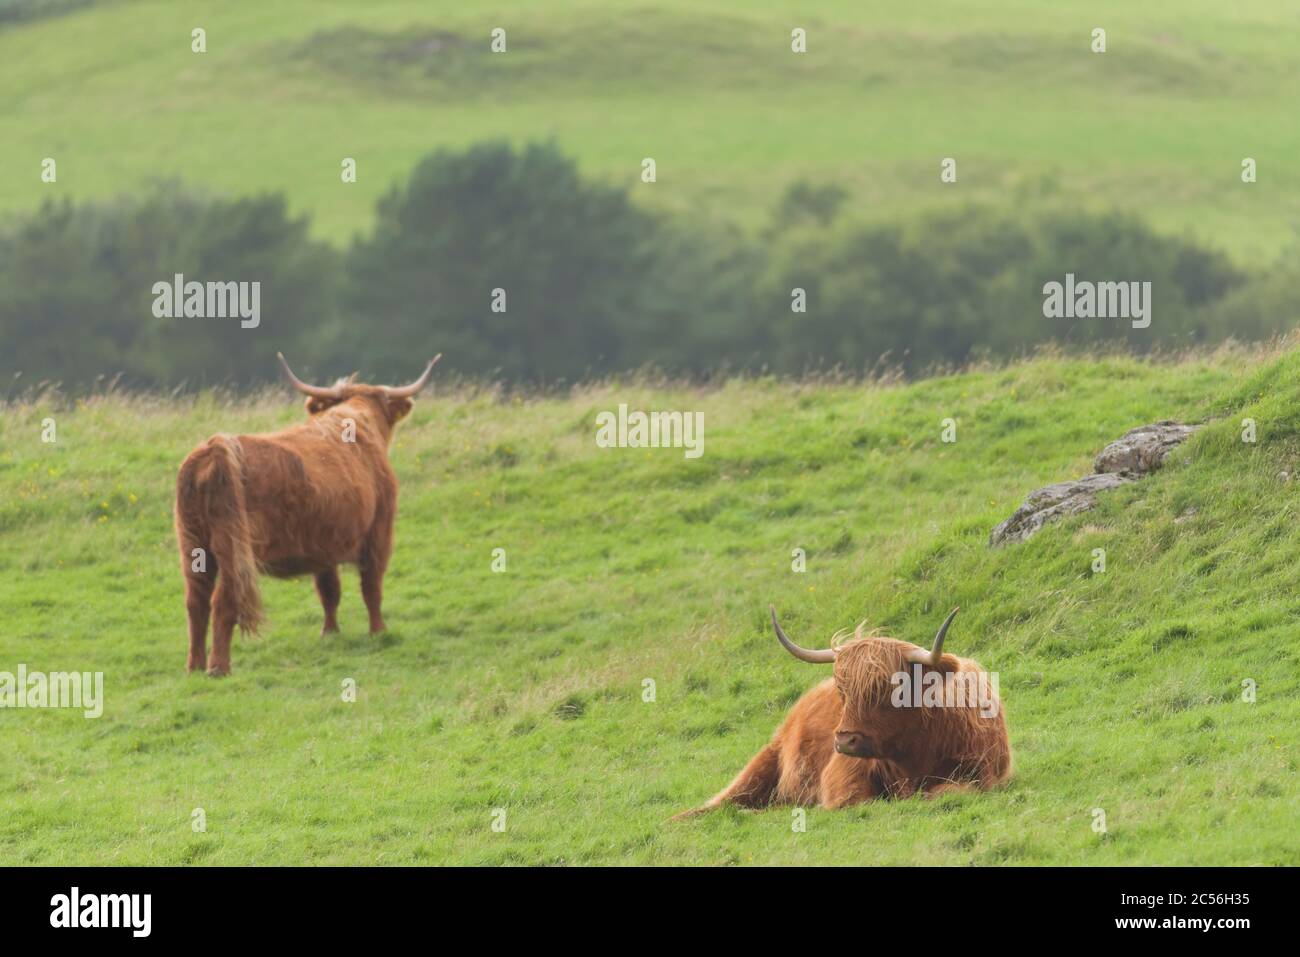 Scène de 2 boeufs écossais de race brune orangée. L'un se trouve dans l'herbe, l'autre regarde loin. Espace de copie, émotion de désaccord. Banque D'Images